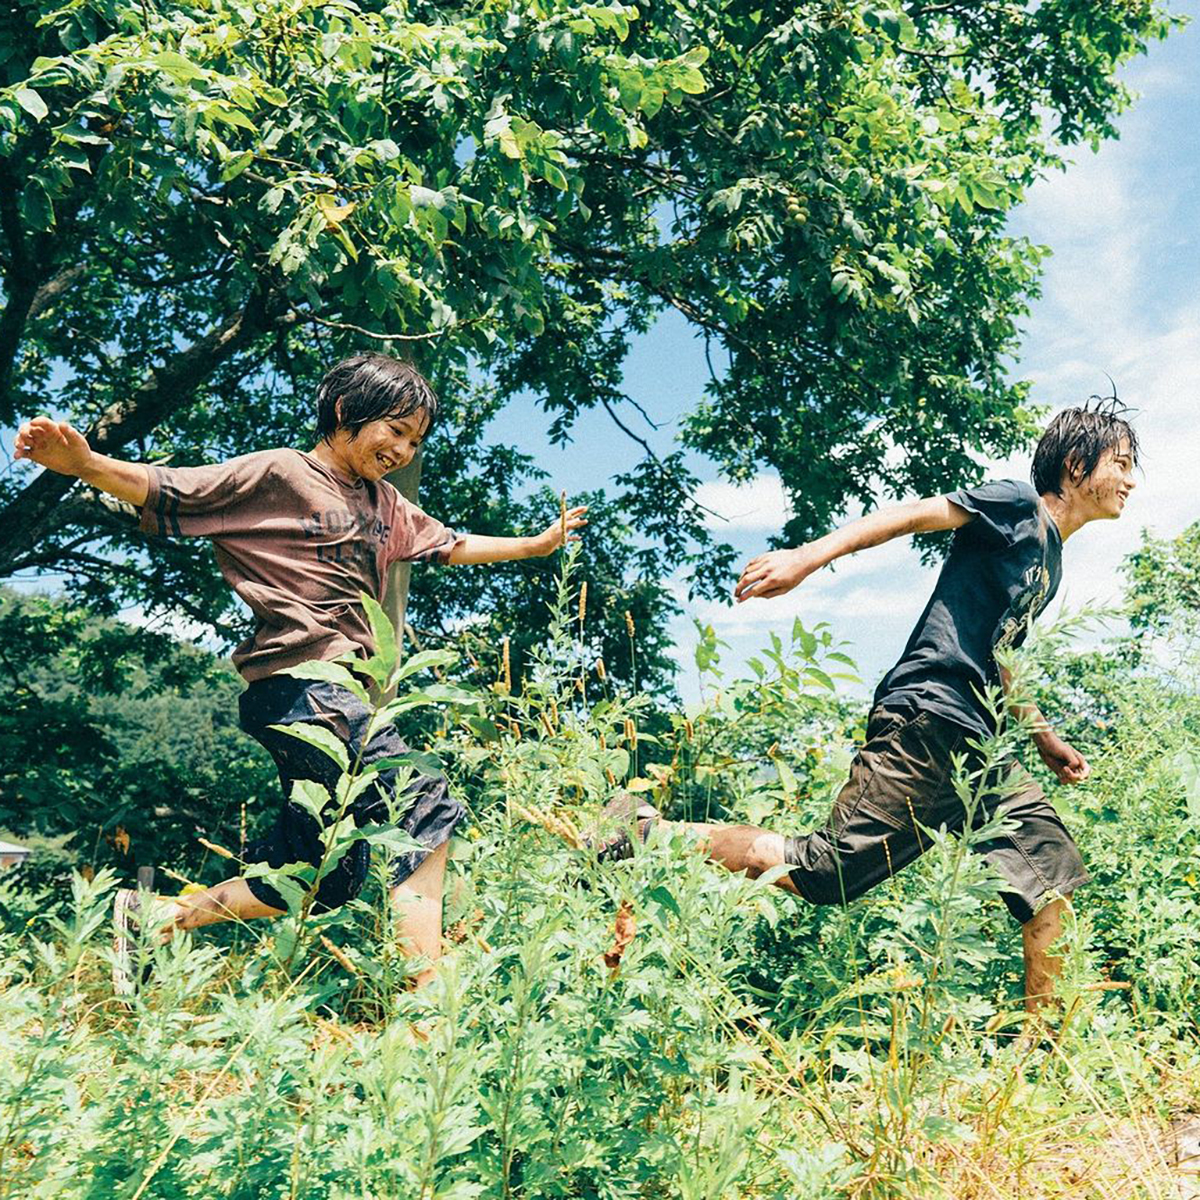 Två unga personer springer genom grönska.